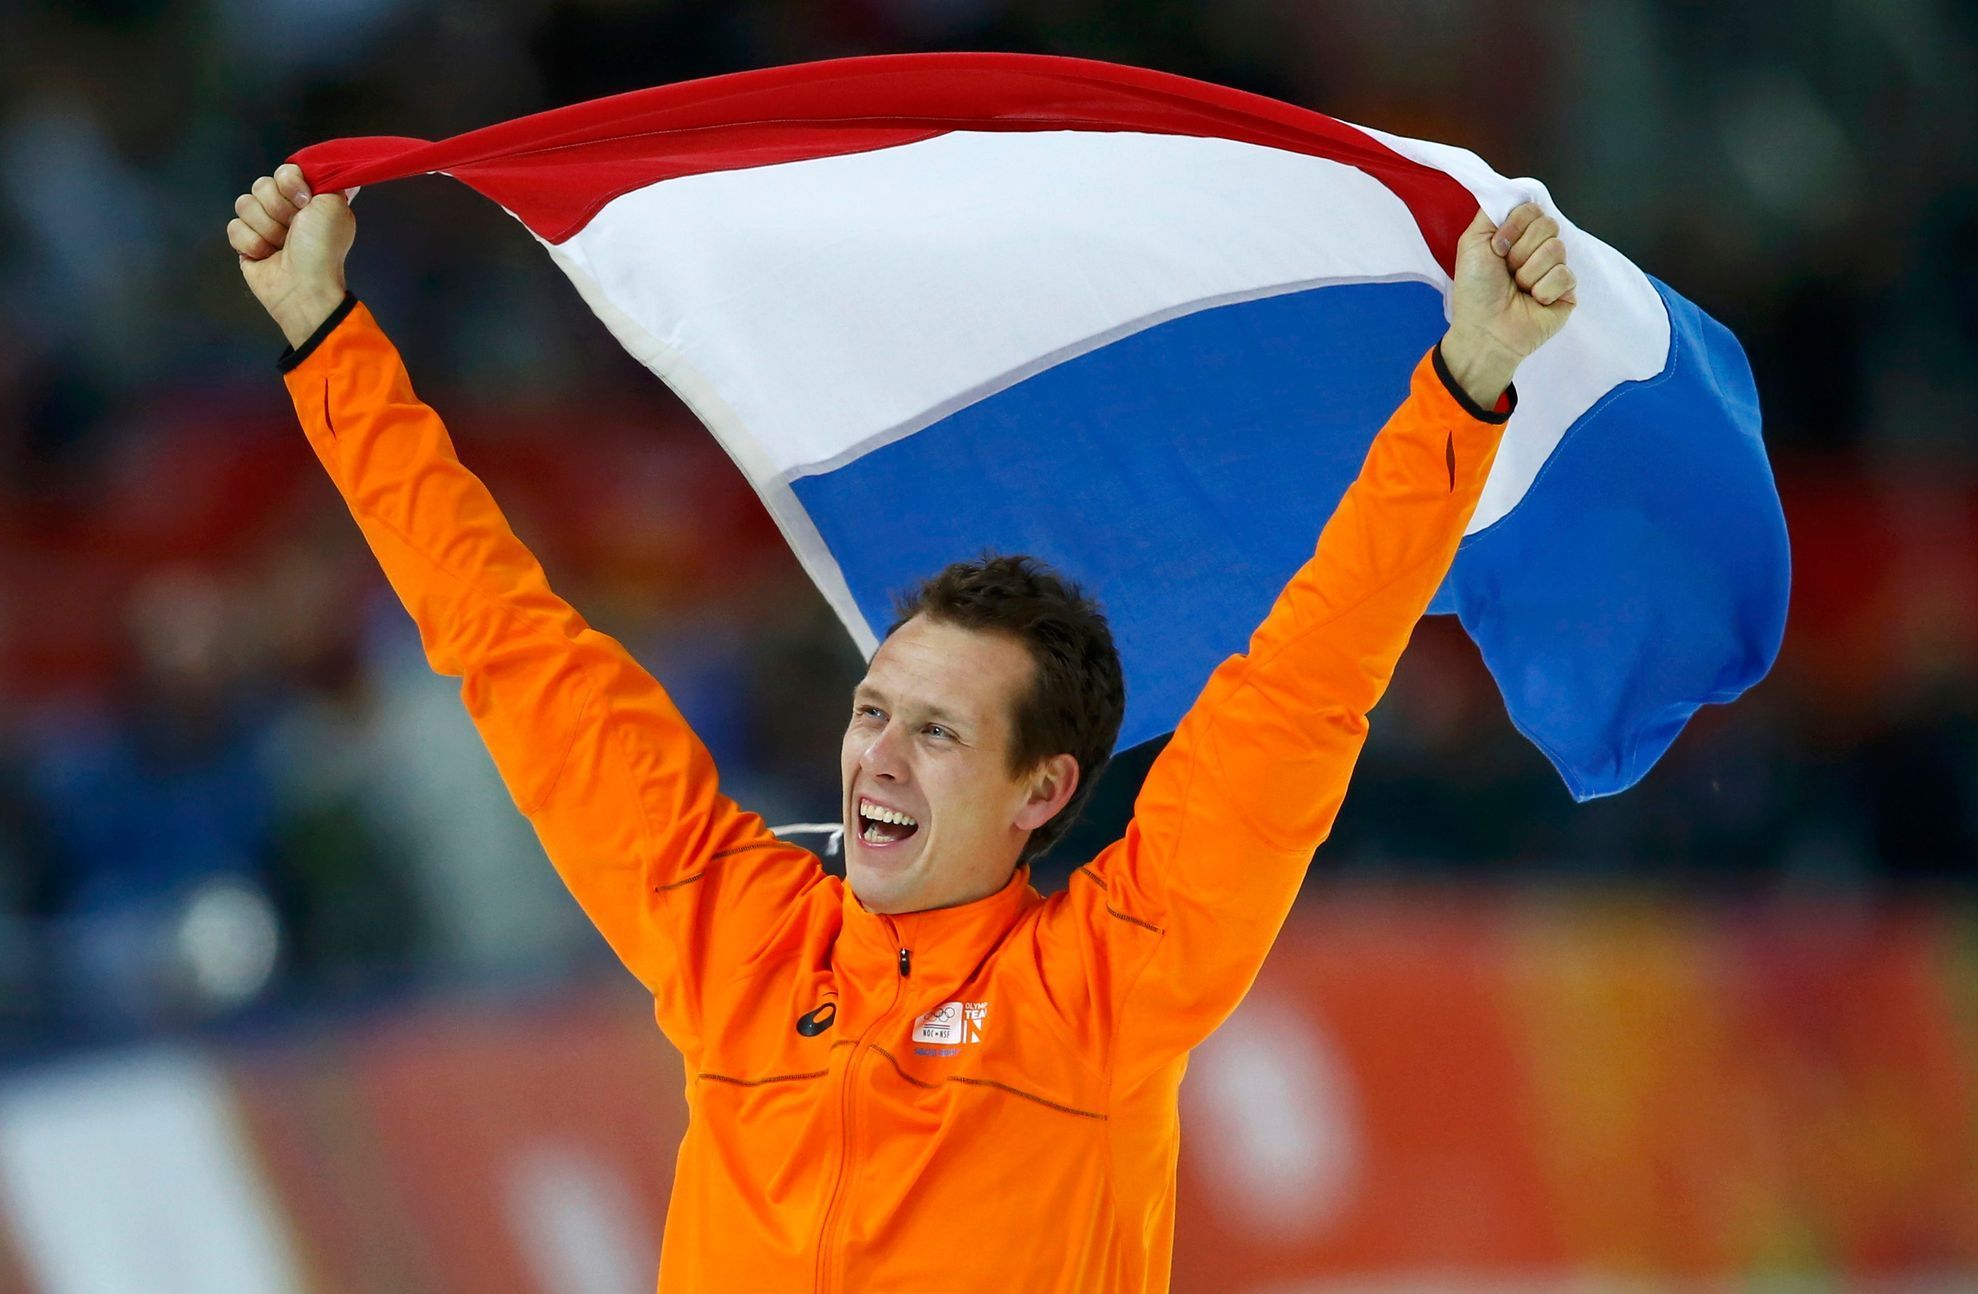 Soči 2014: Stefan Groothuis, NED (rychlobruslení, 1000m, finále)